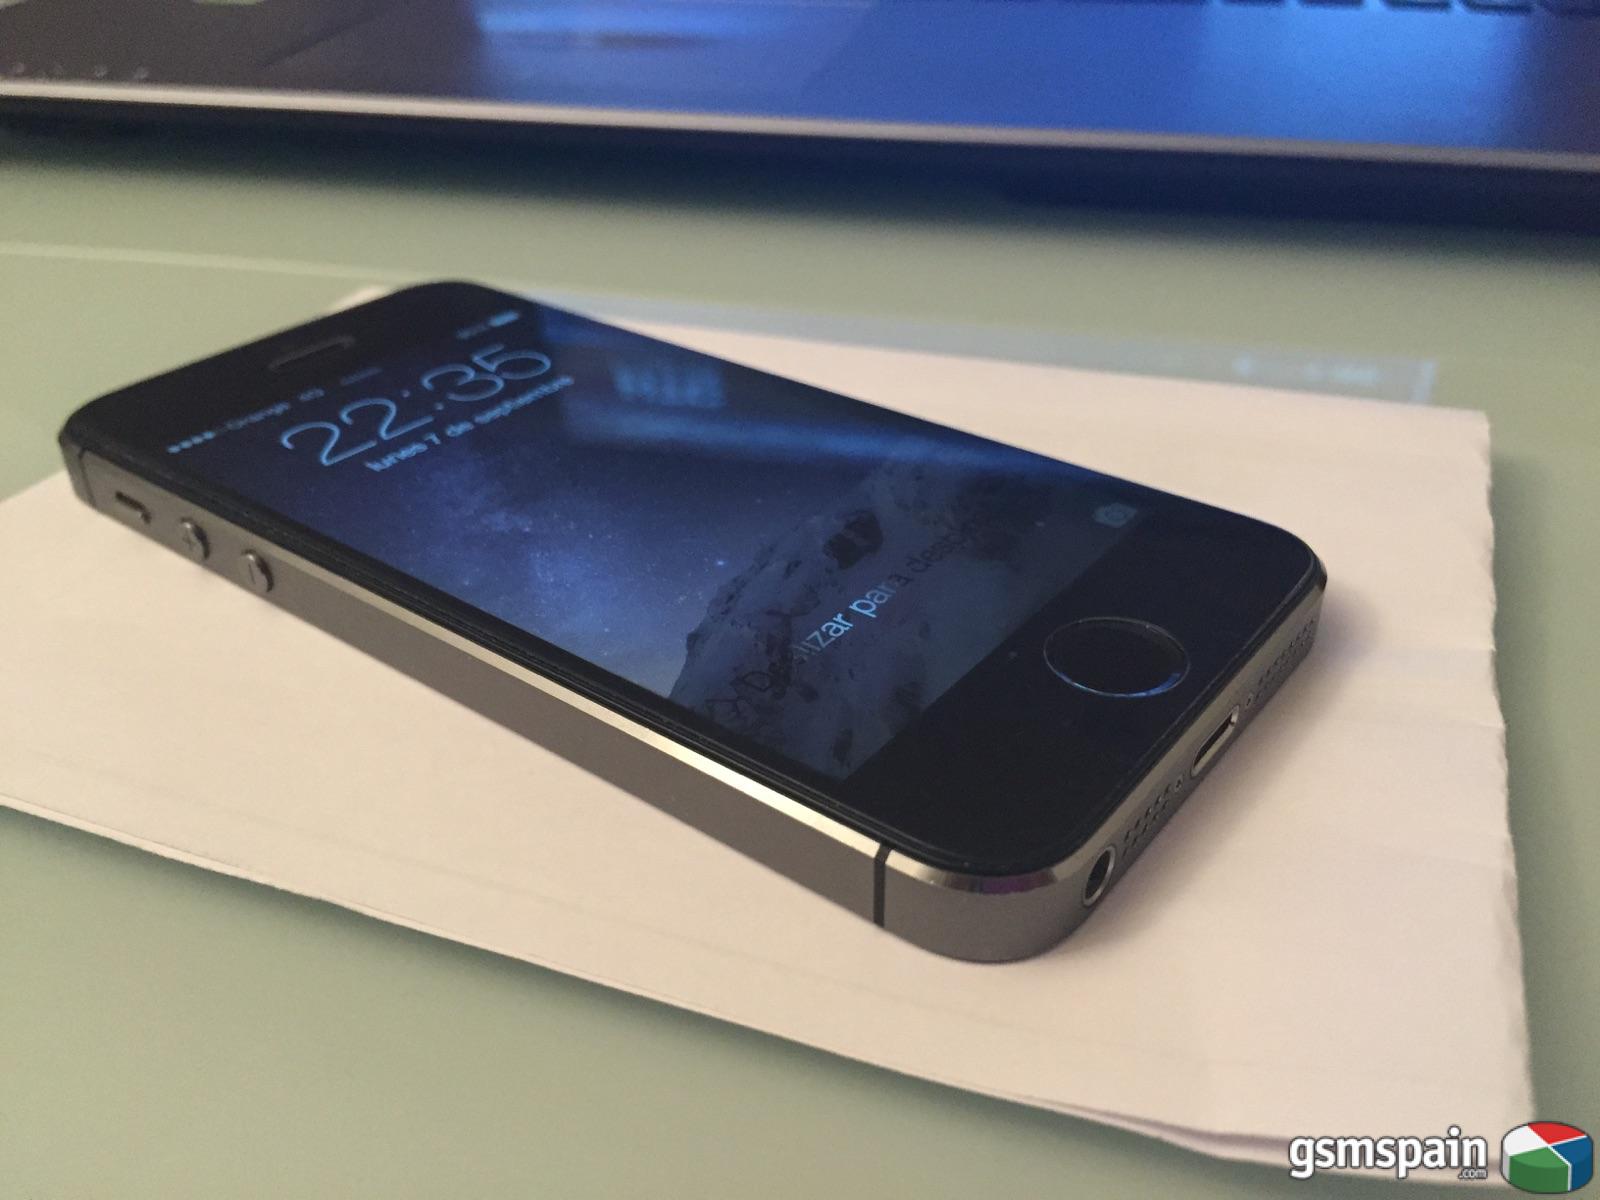 [CAMBIO] iPhone 5s 16Gb Spacial Grey